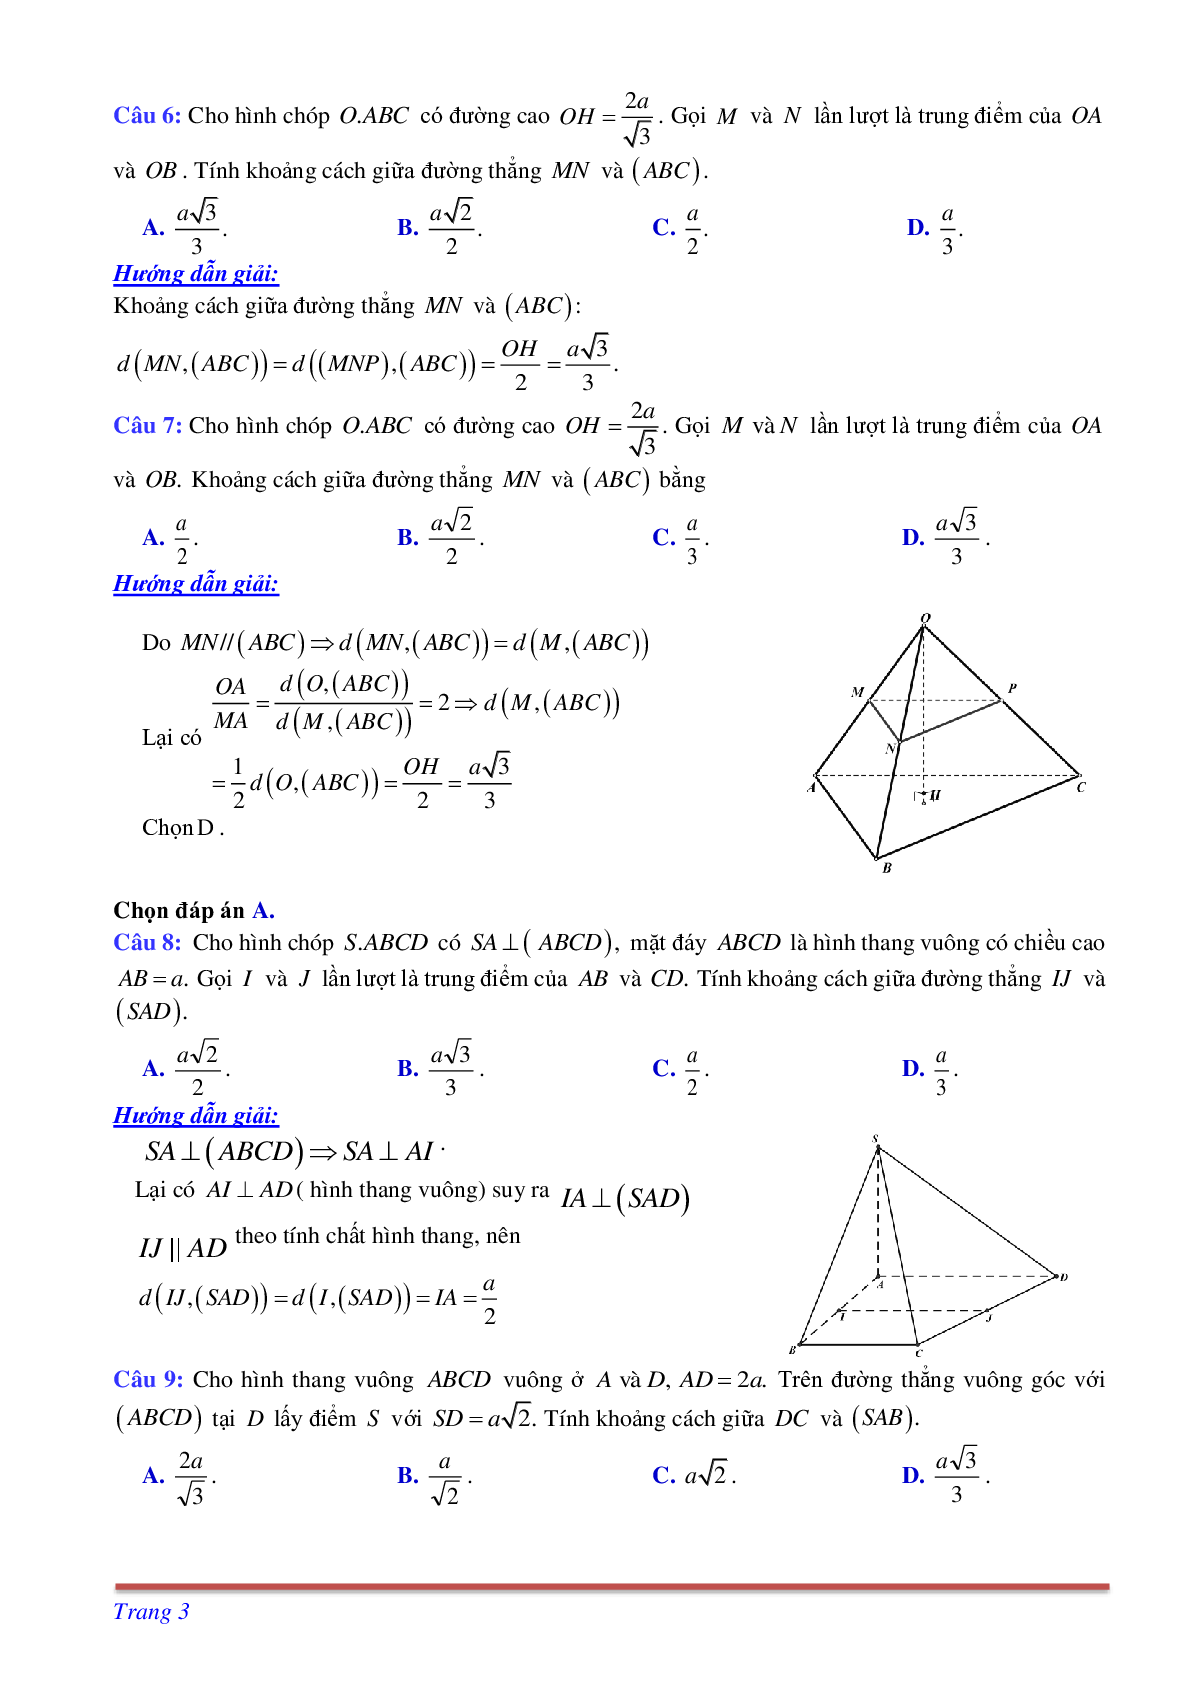 Phương pháp giải và bài tập về Cách tính khoảng cách giữa đường thẳng và mặt phẳng song song có đáp án (trang 3)